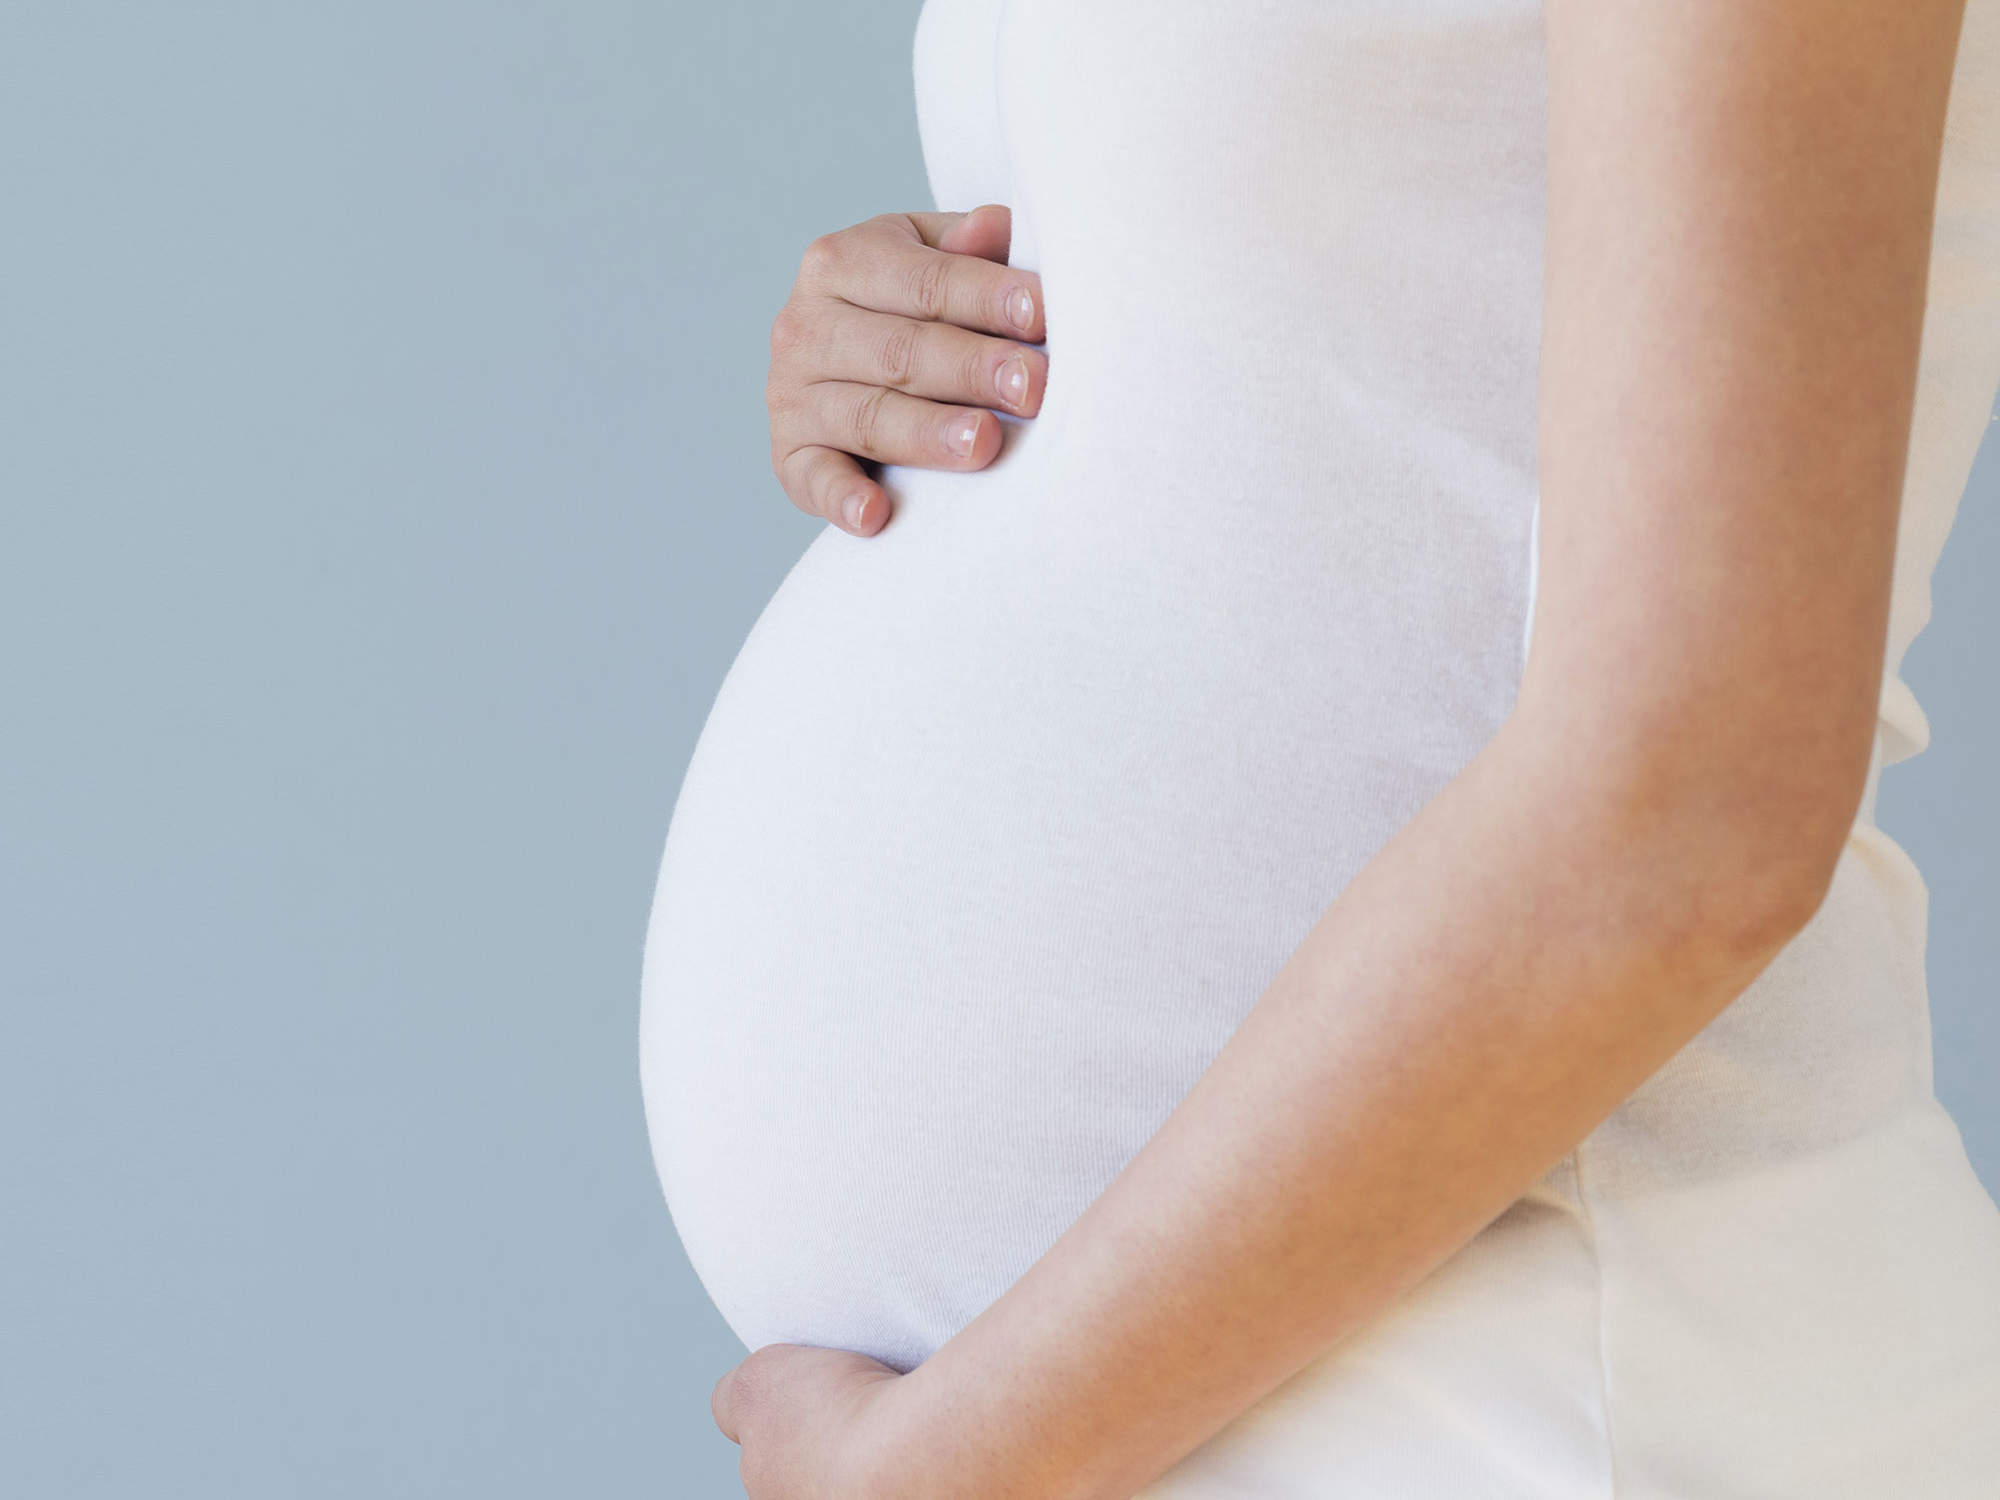 تامین سلامت مادر و جنین در دوران بارداری